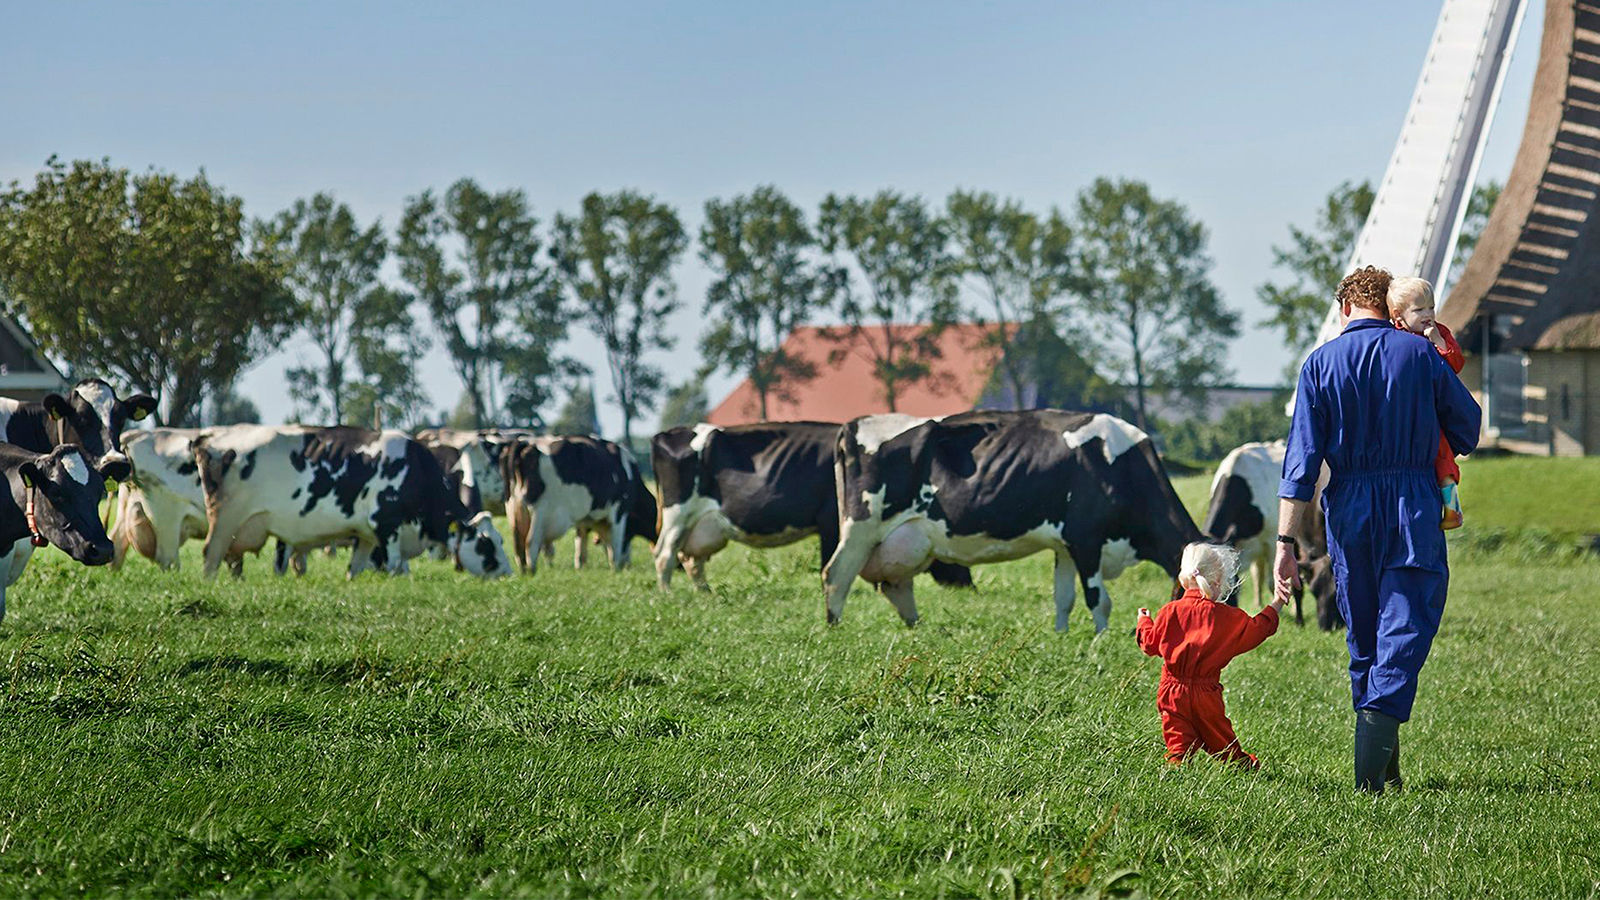 Lahan peternakan sapi milik FrieslandCampina.